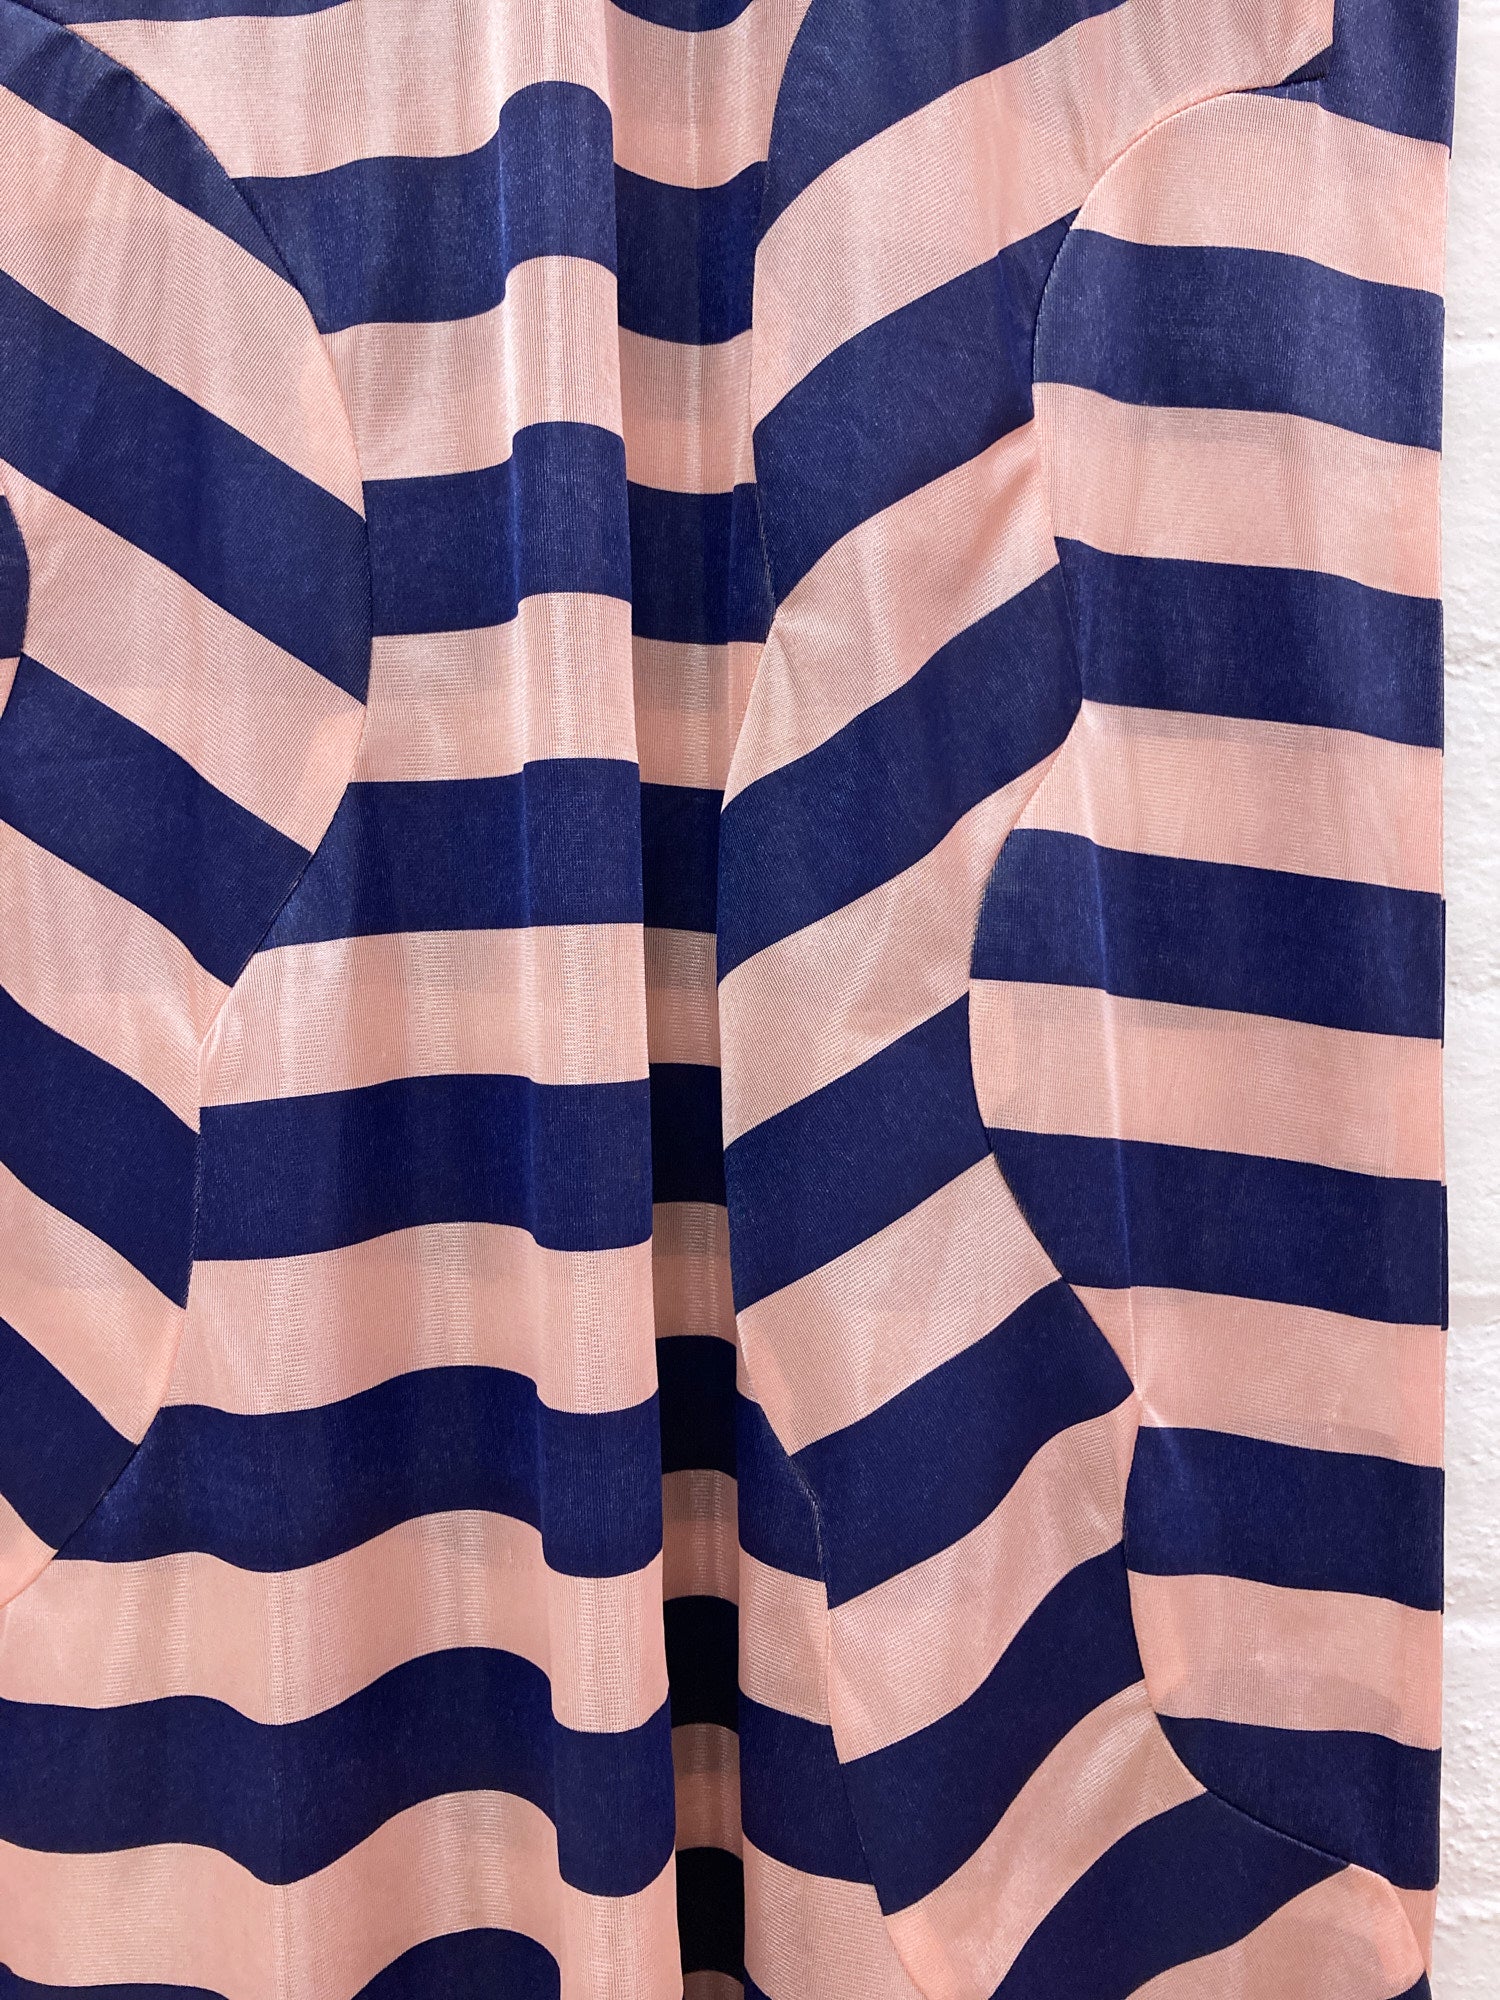 Comme des Garcons 1996 pink and blue stripe deformed short sleeve dress